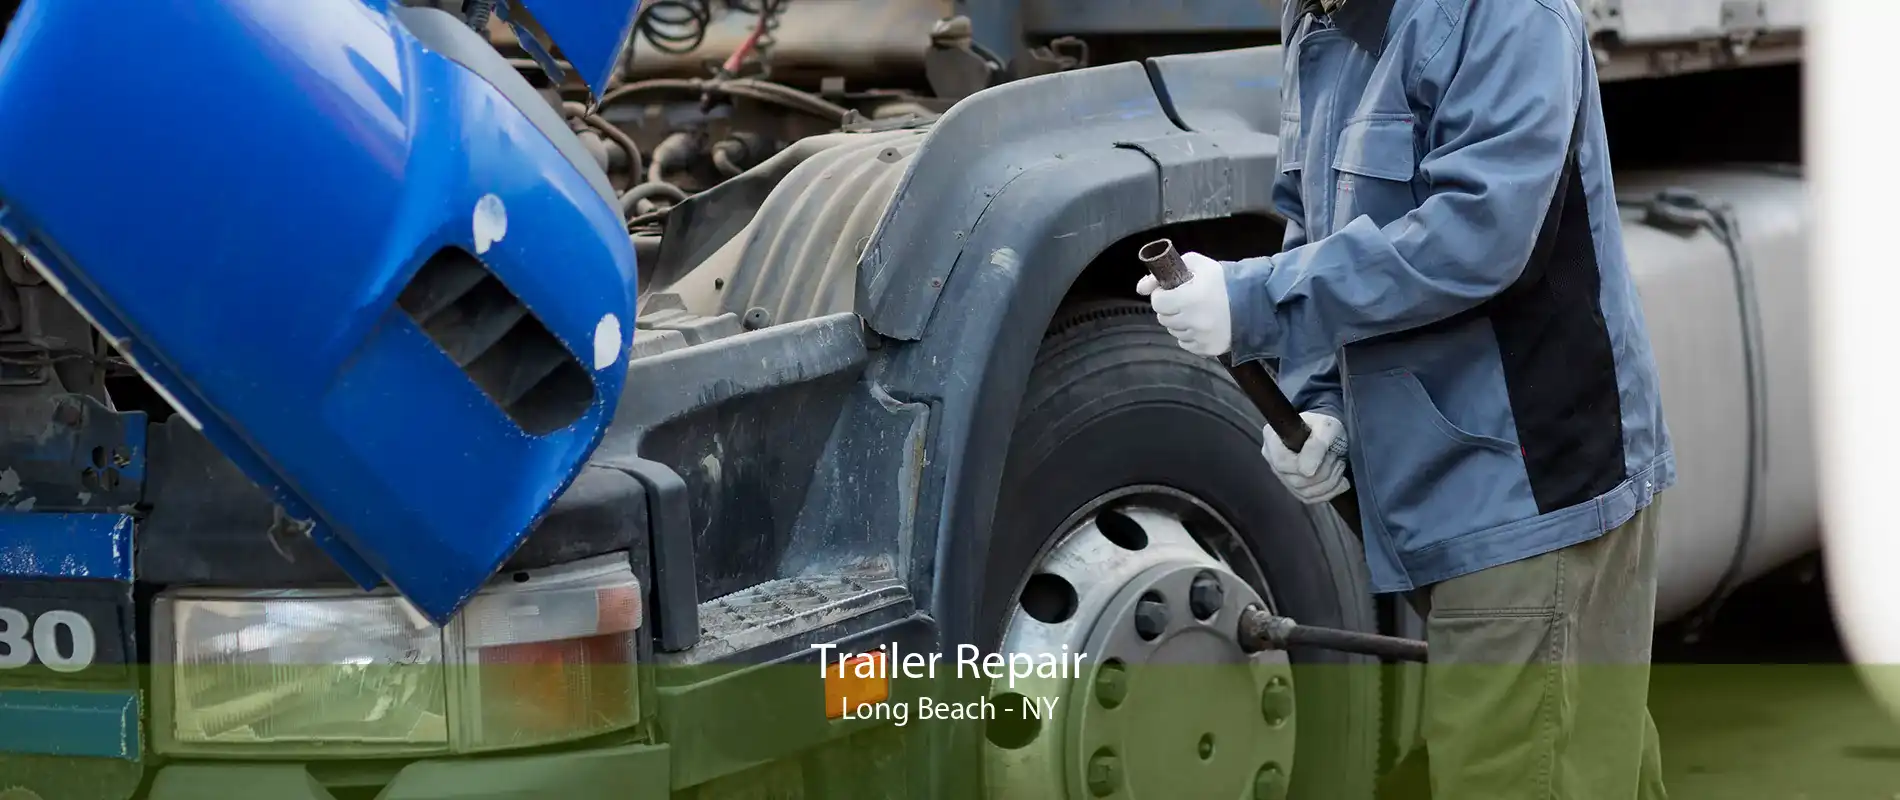 Trailer Repair Long Beach - NY